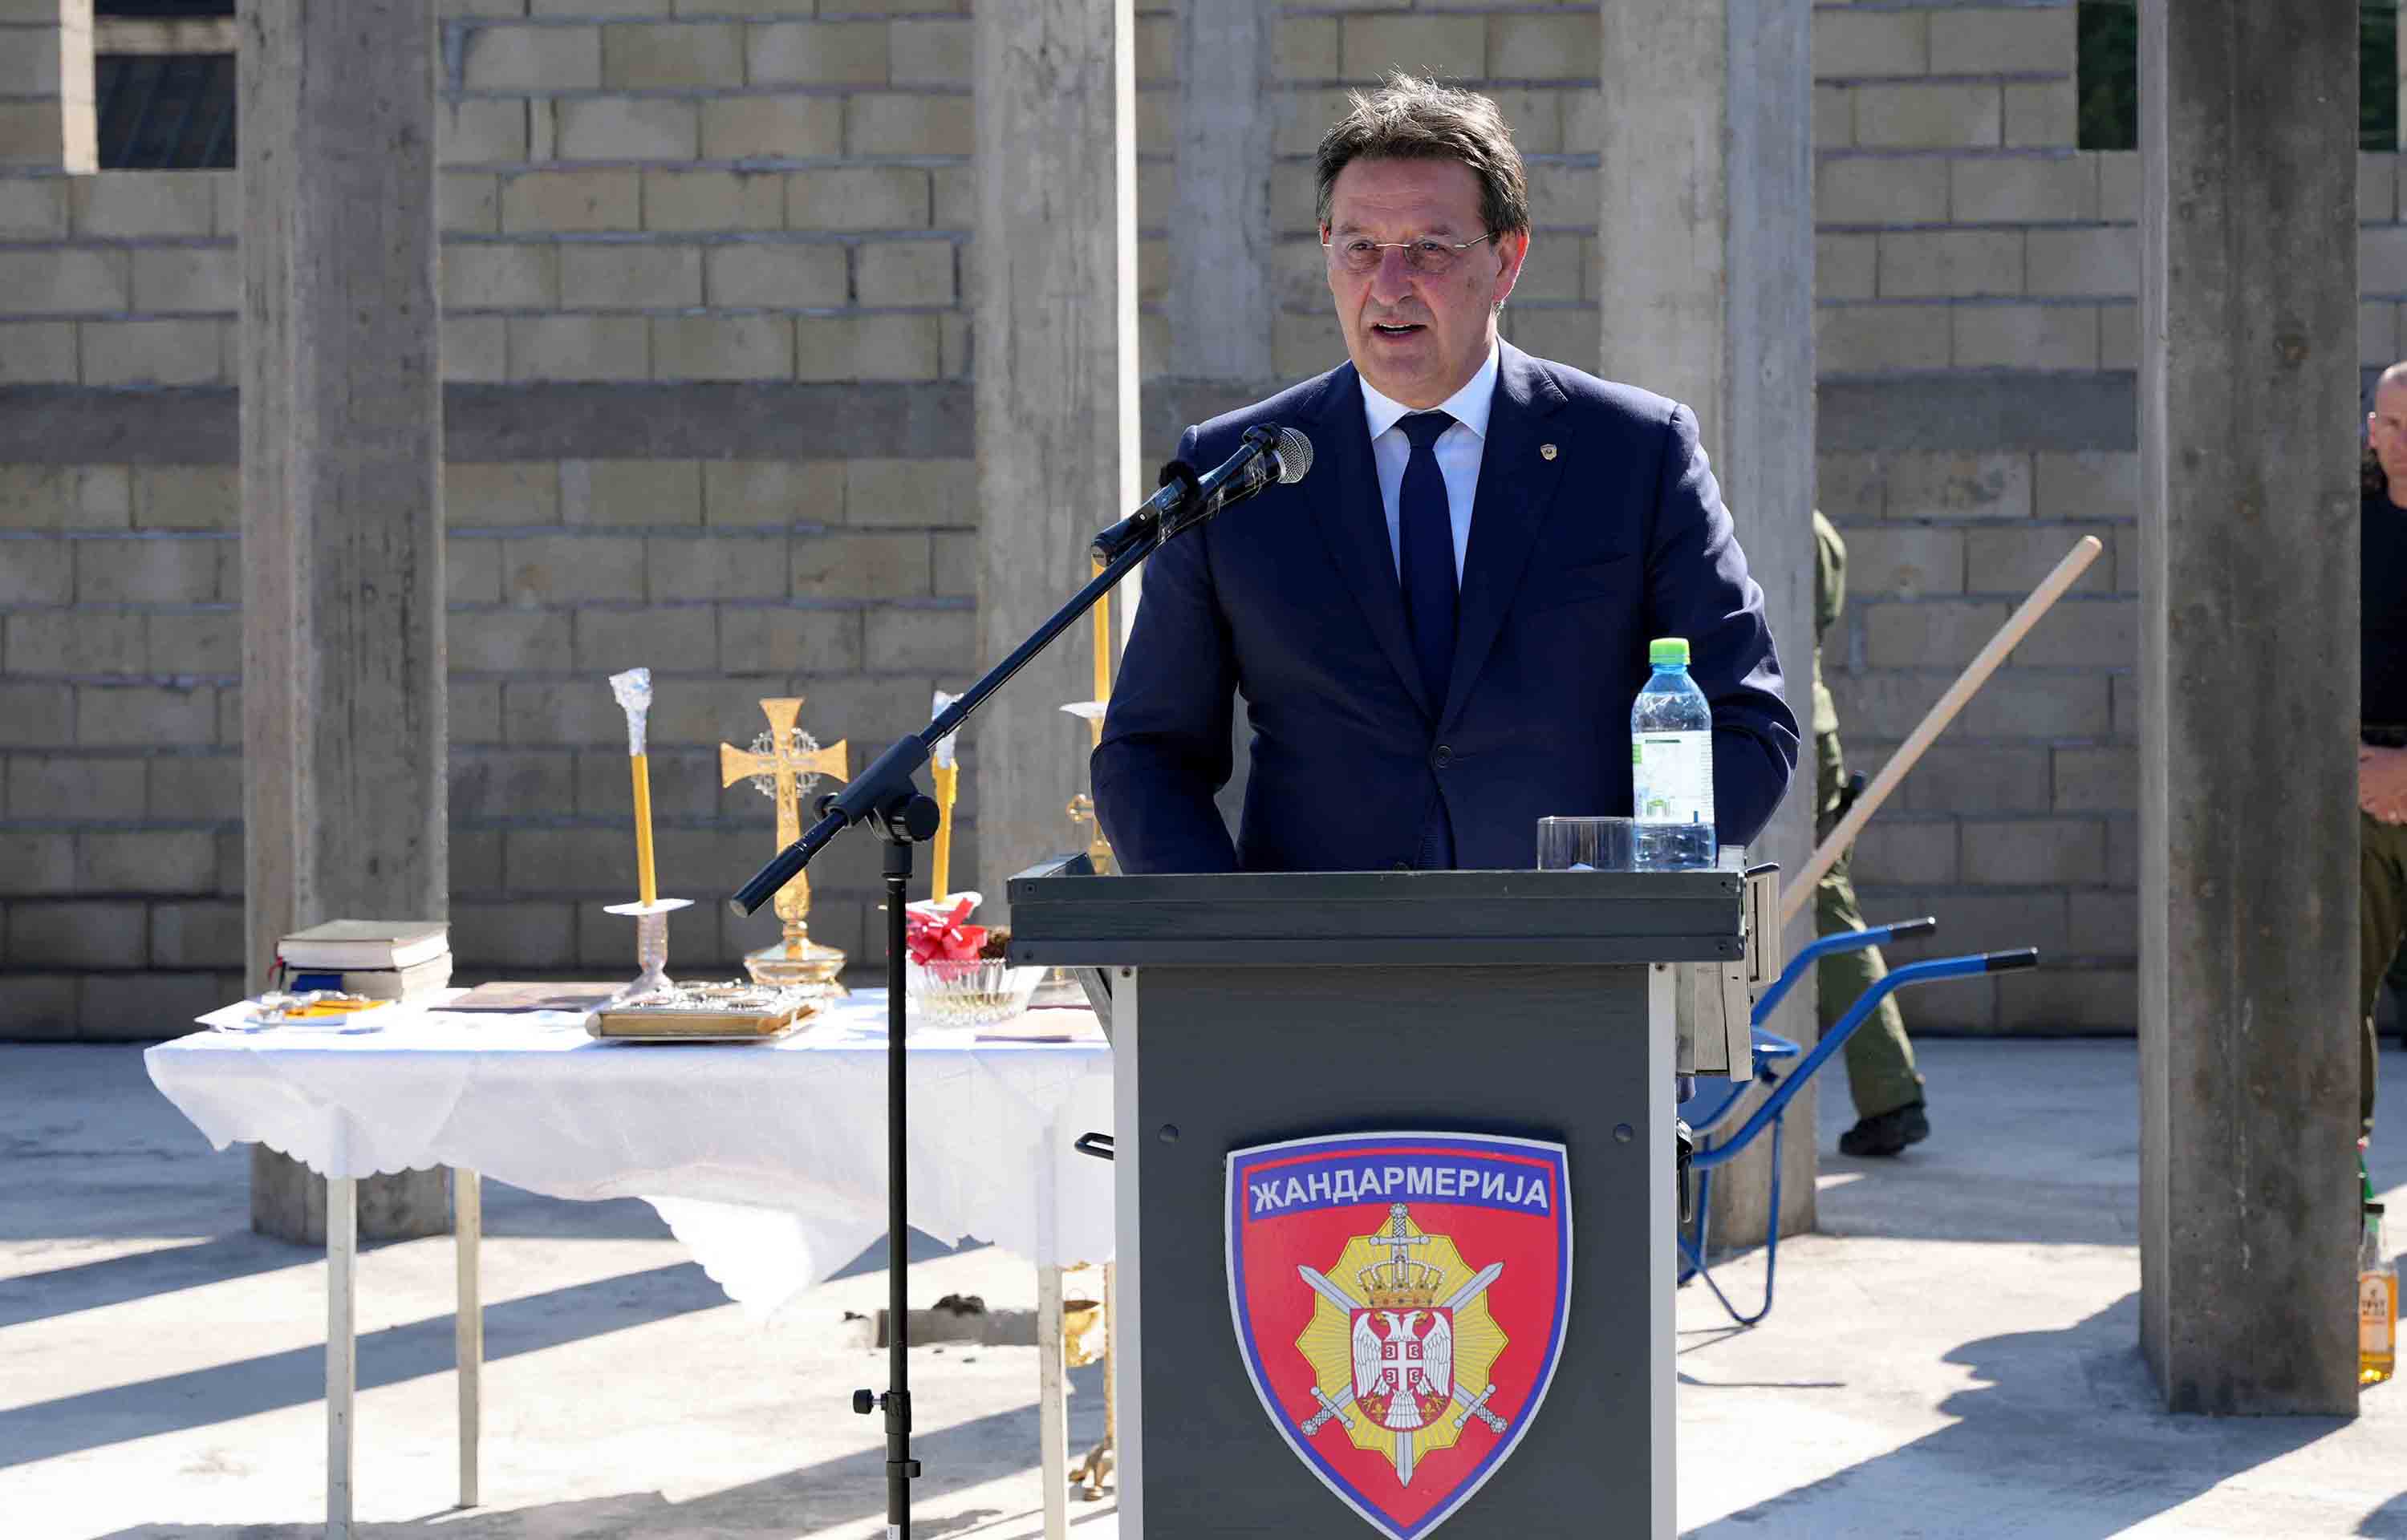 Освећење темеља цркве Свети кнез Лазар и косовски мученици у бази нишког одреда Жандармерије у Алексинцу